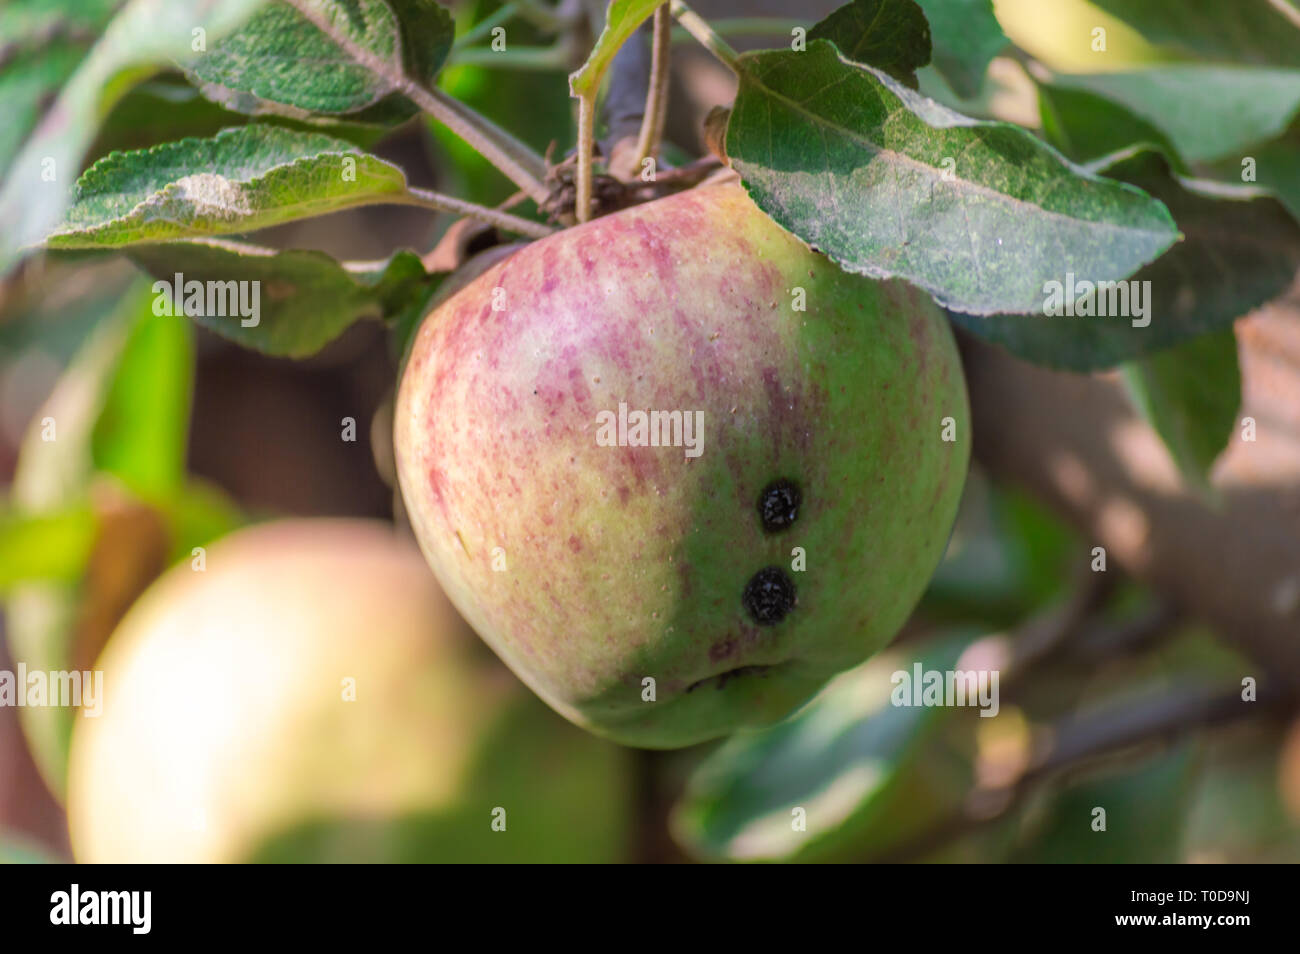 Les pommes gâtées par les ravageurs, insectes, maladies des plantes, consommés par les oiseaux, avant d'être récoltées Banque D'Images